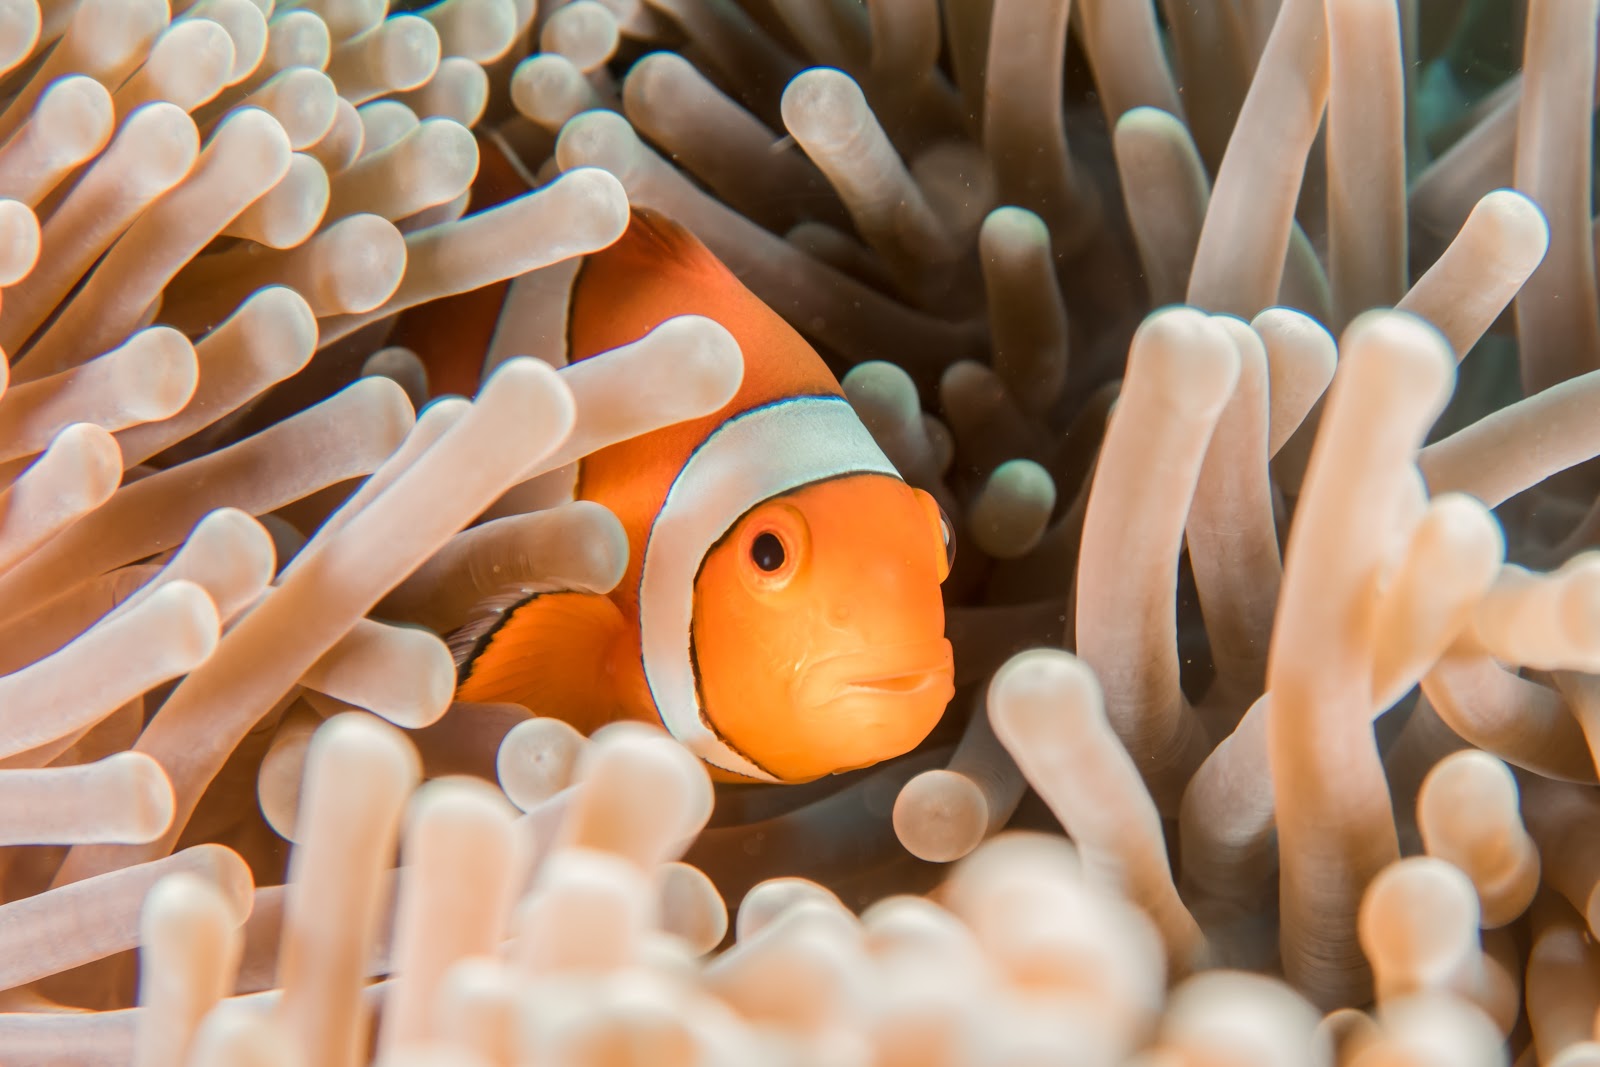 clown fish in sea anemone